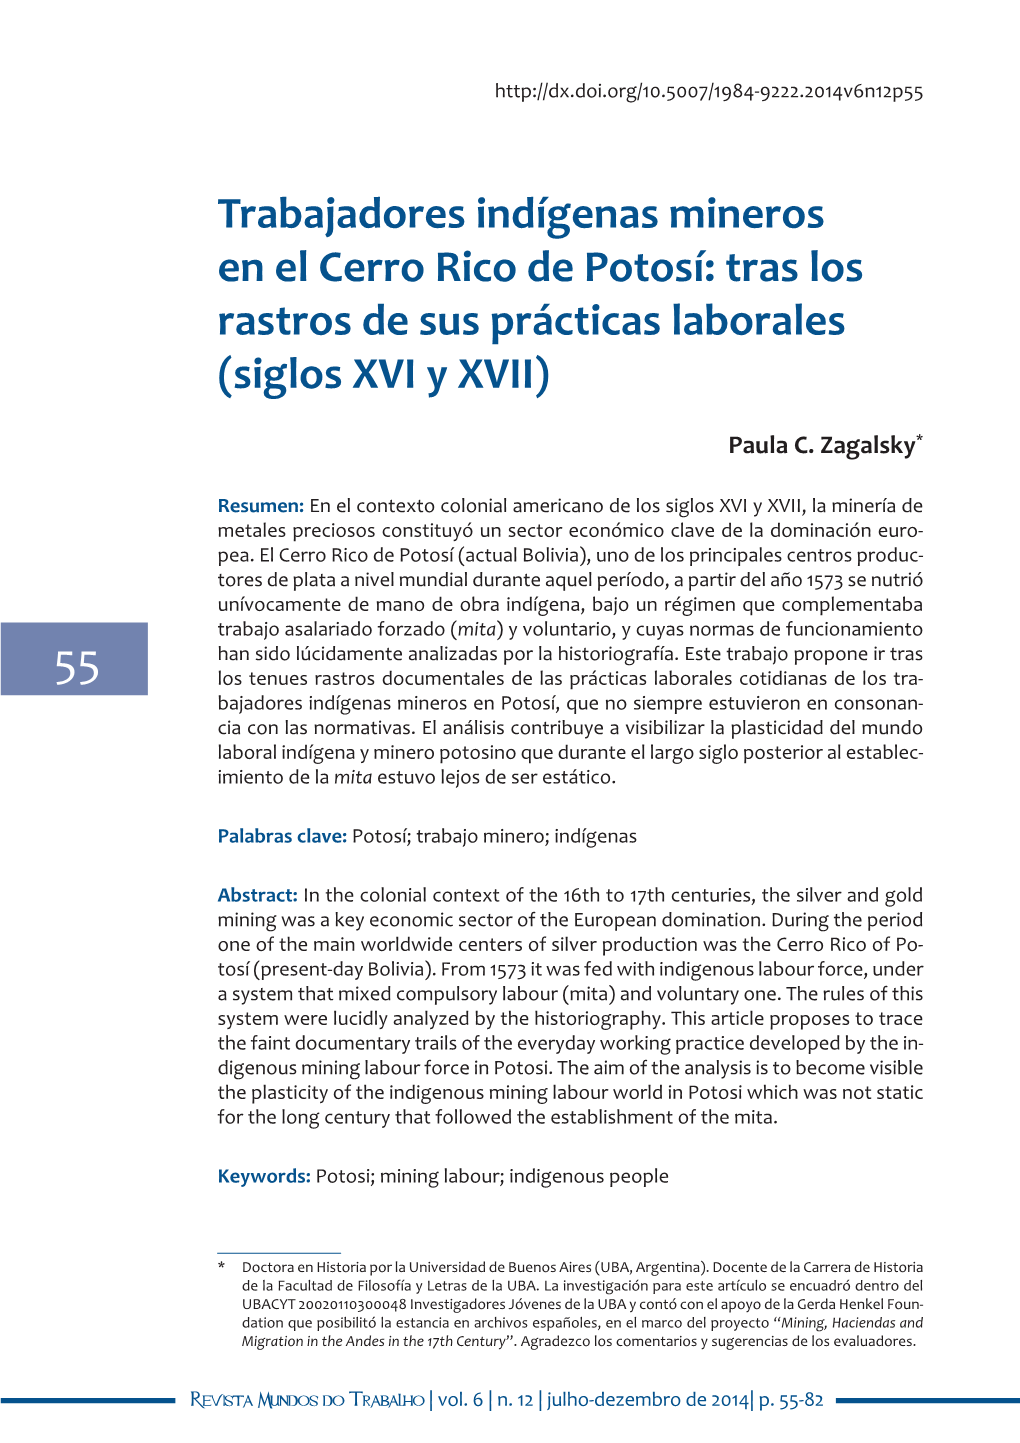 Trabajadores Indígenas Mineros En El Cerro Rico De Potosí: Tras Los Rastros De Sus Prácticas Laborales (Siglos XVI Y XVII)